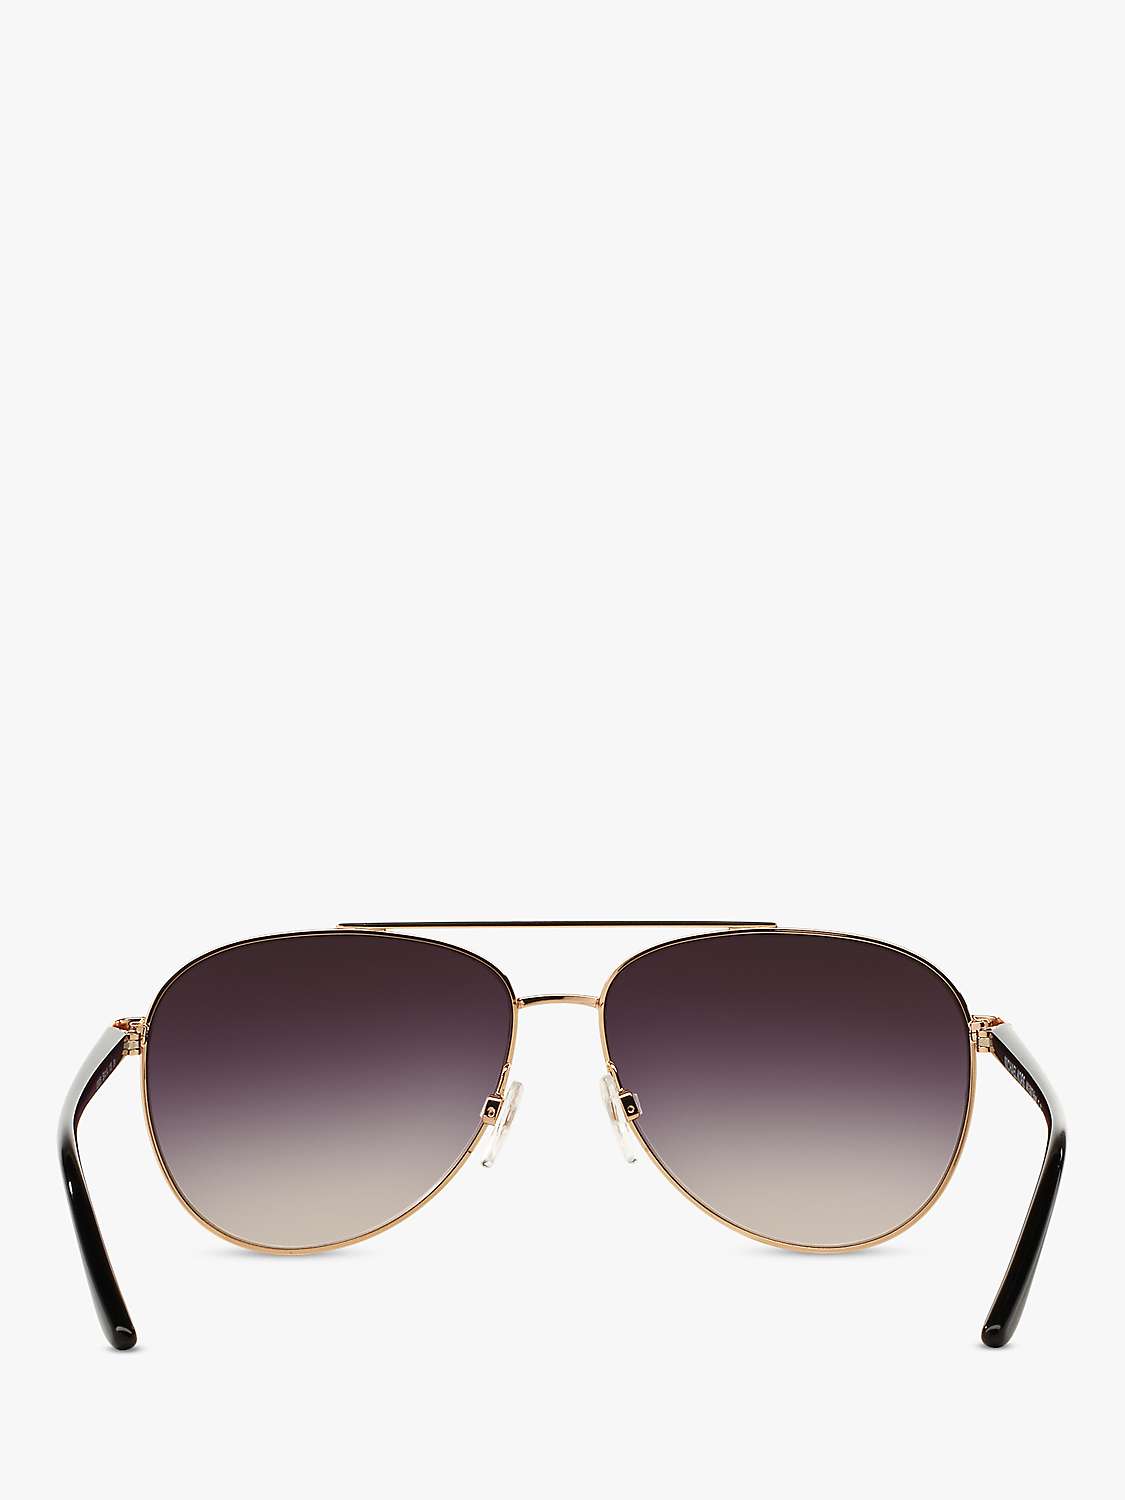 Buy Michael Kors MK5007 Hvar I Aviator Sunglasses Online at johnlewis.com